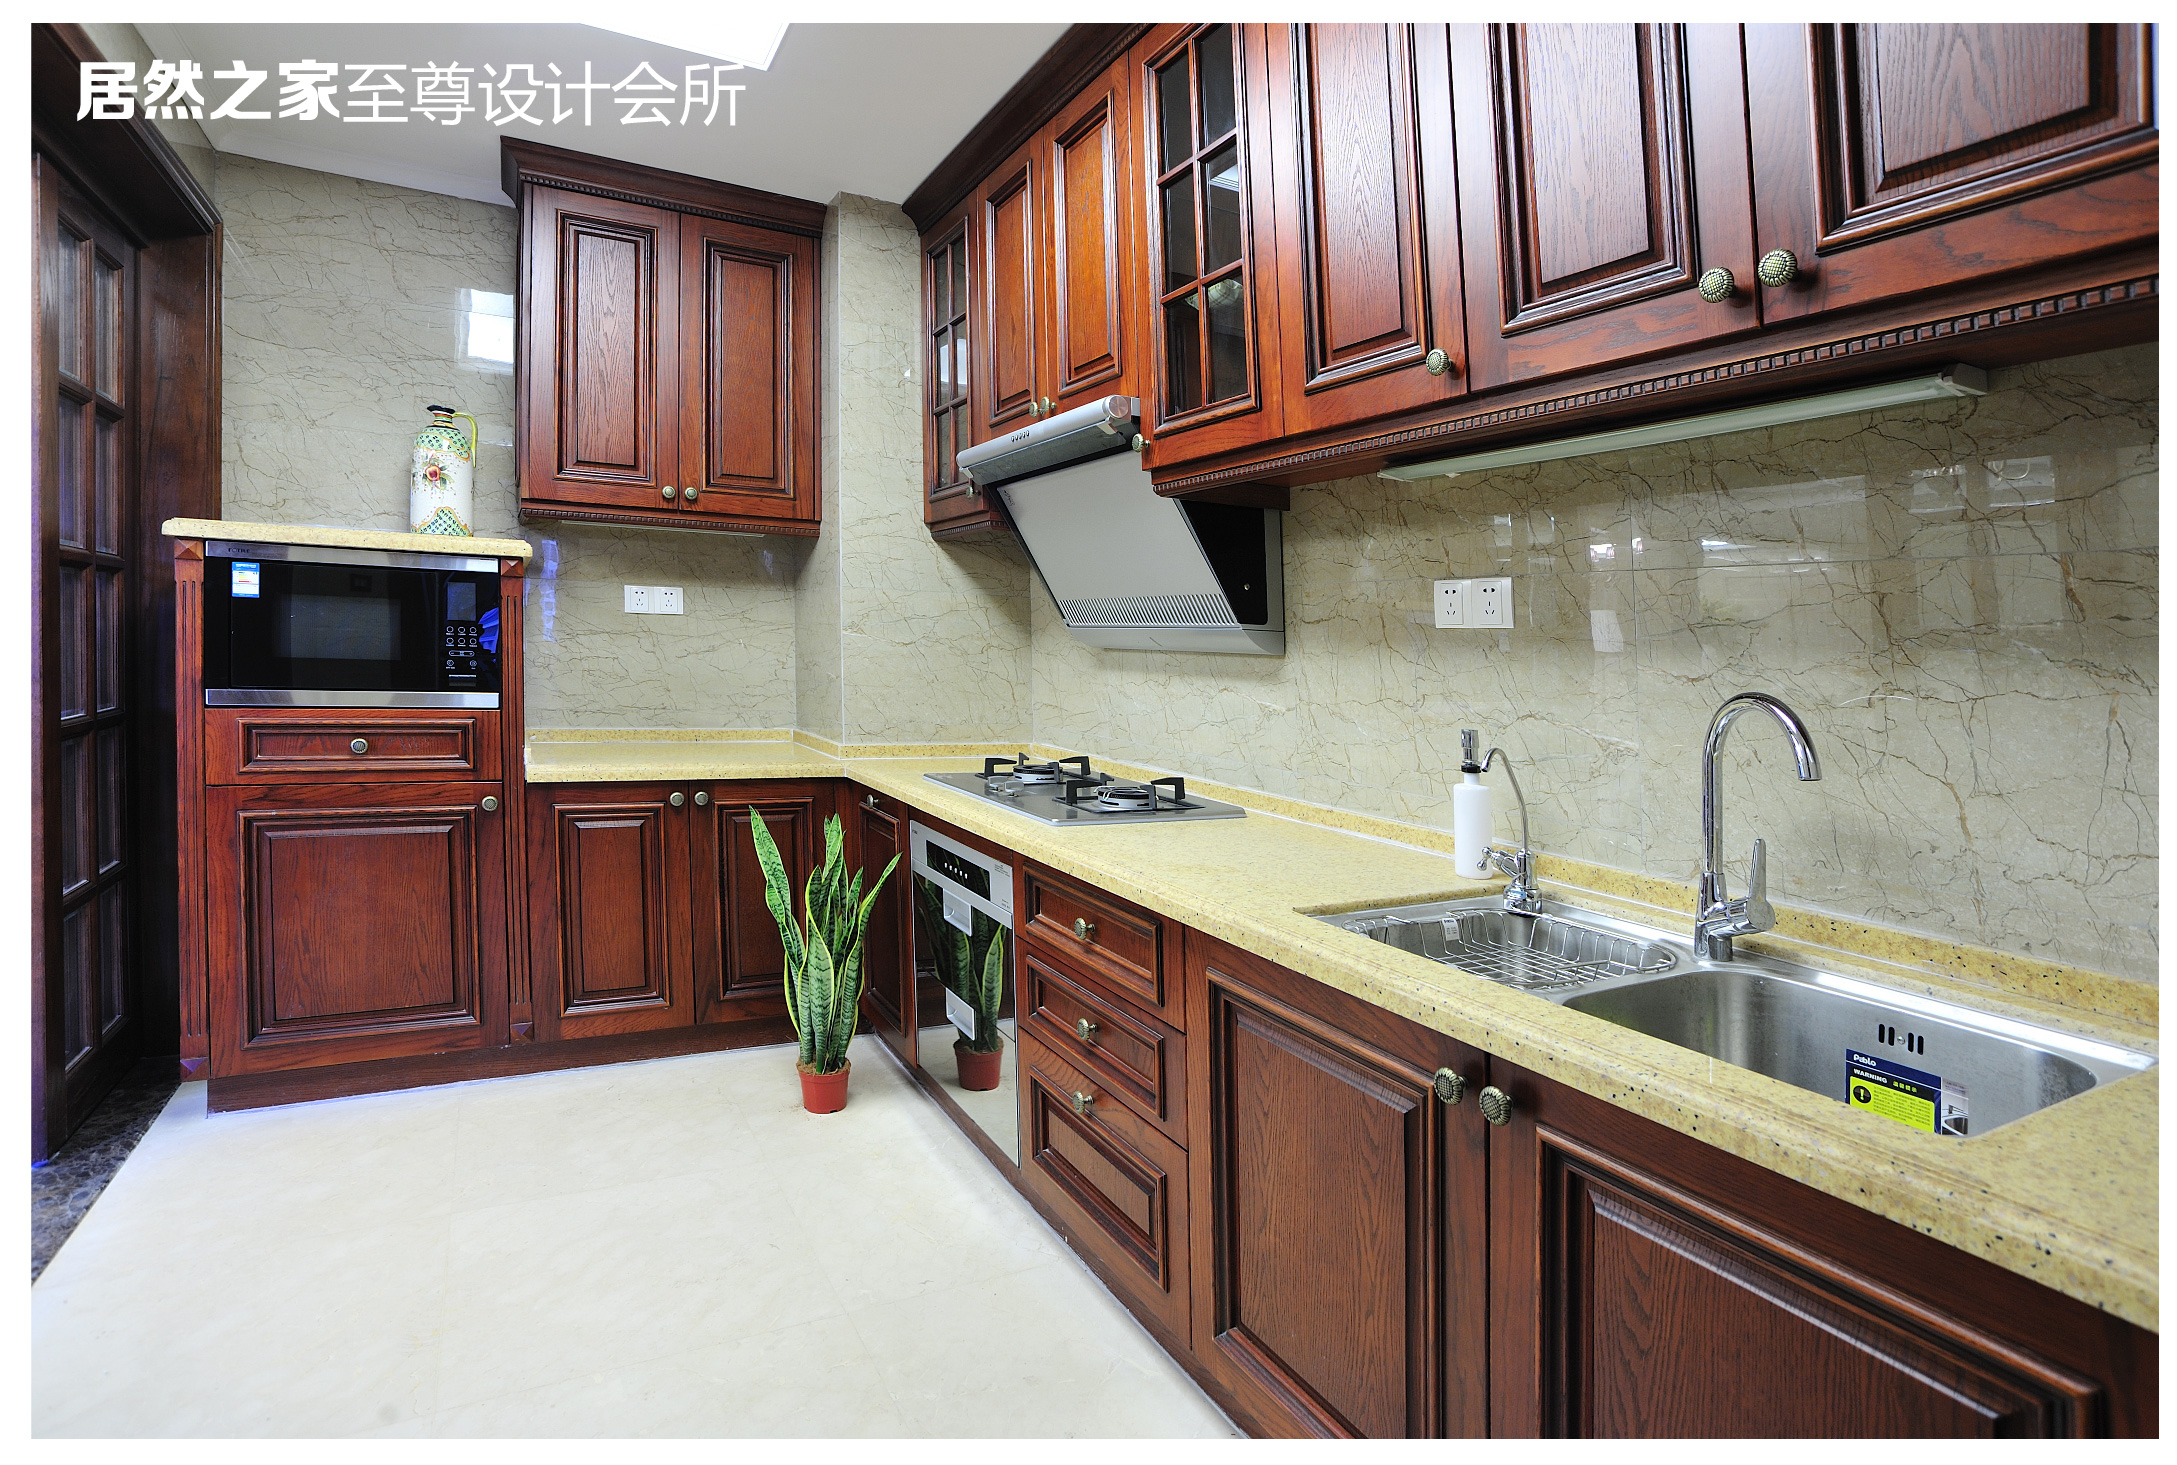 美式 古典 厨房图片来自武汉天合营造设计在复地东湖国际美式古典风情的分享